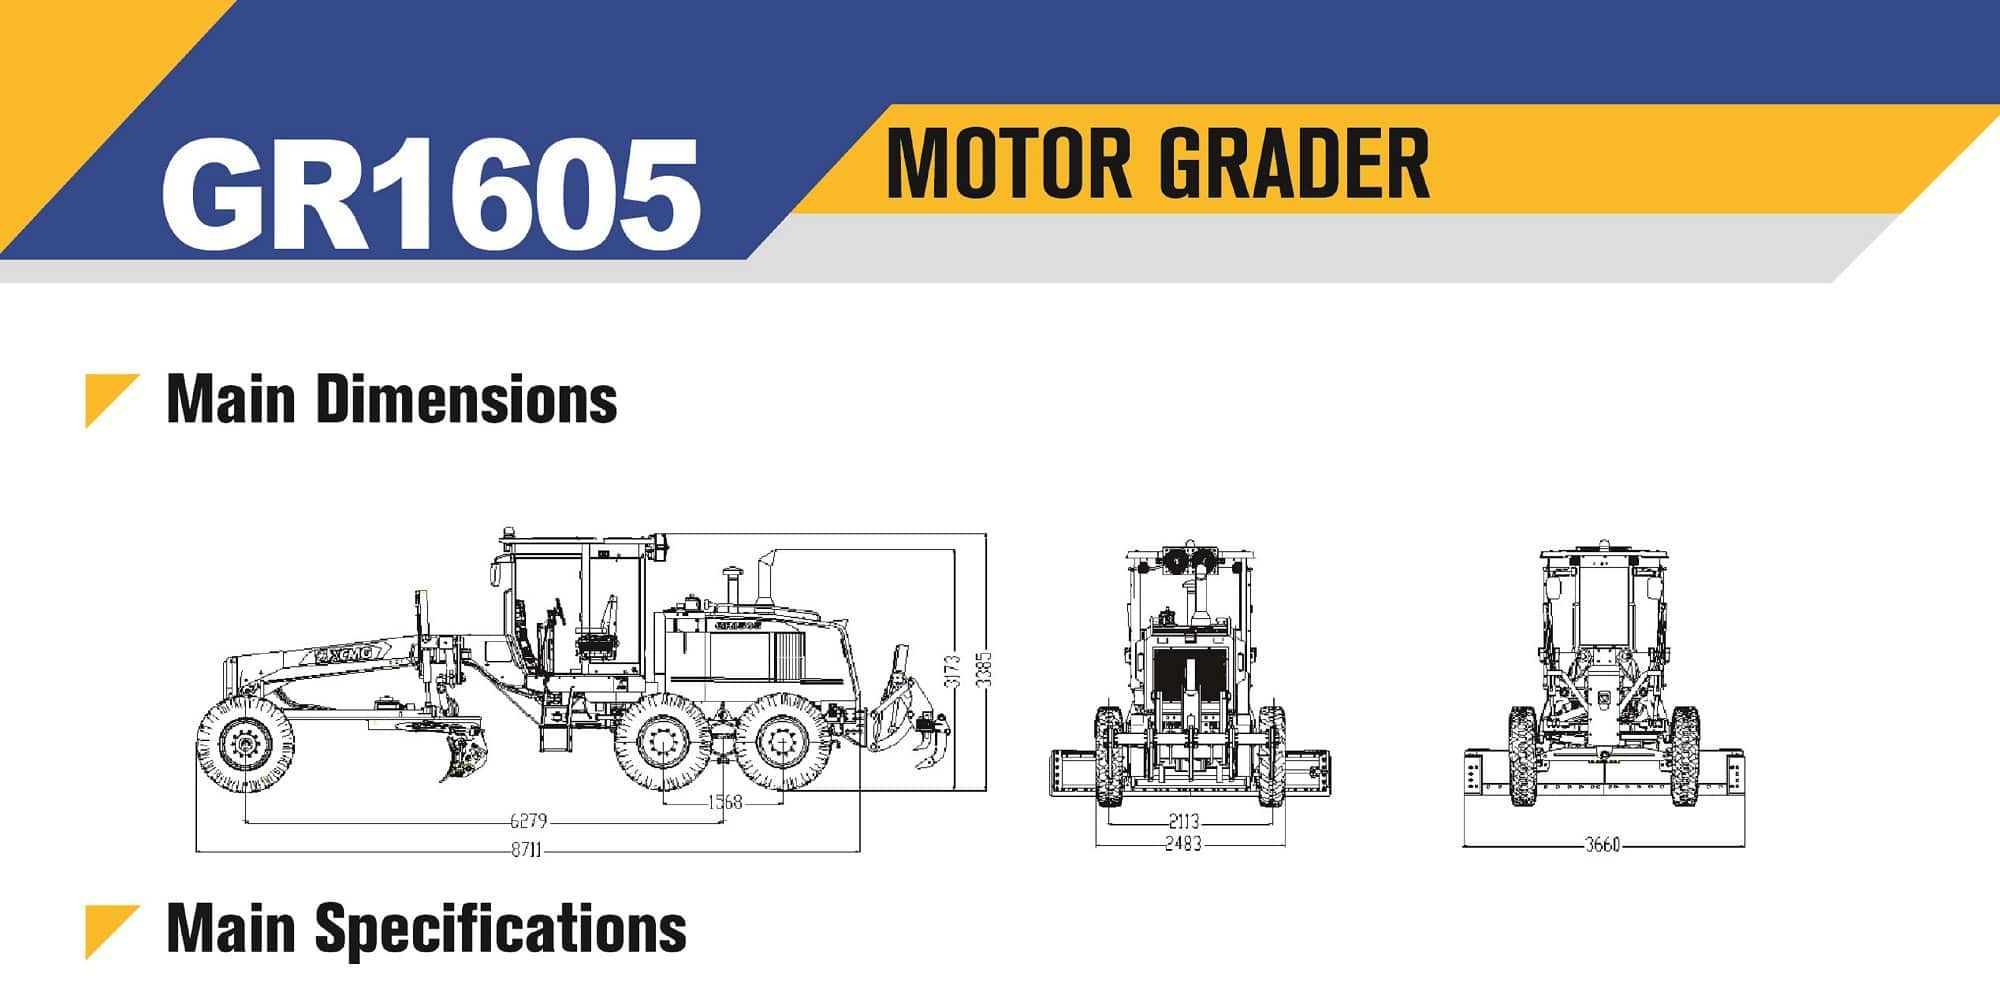 XCMG Official Motor Grader GR1605 for sale